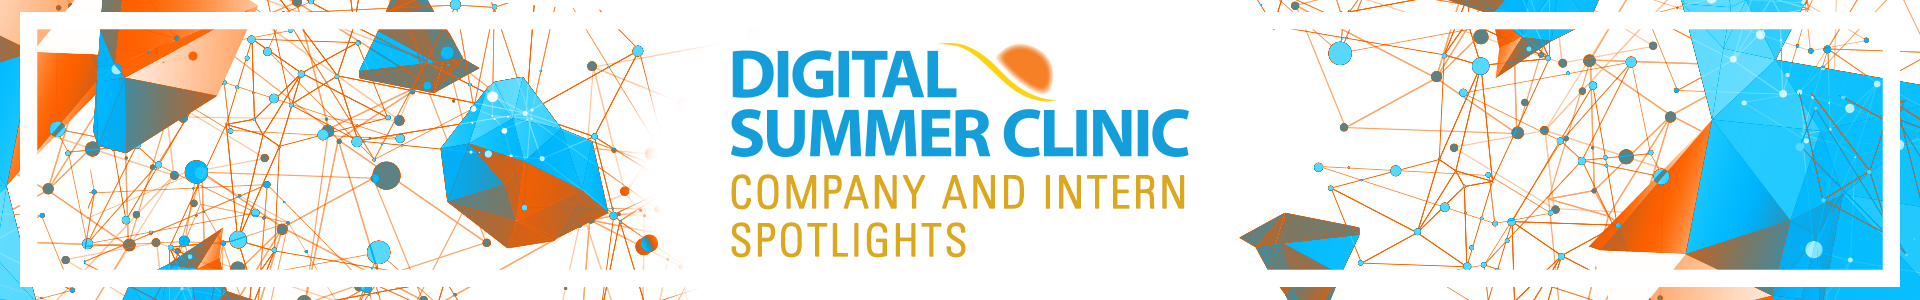 Digital Summer Company and Intern Spotlights - September 21, 2020